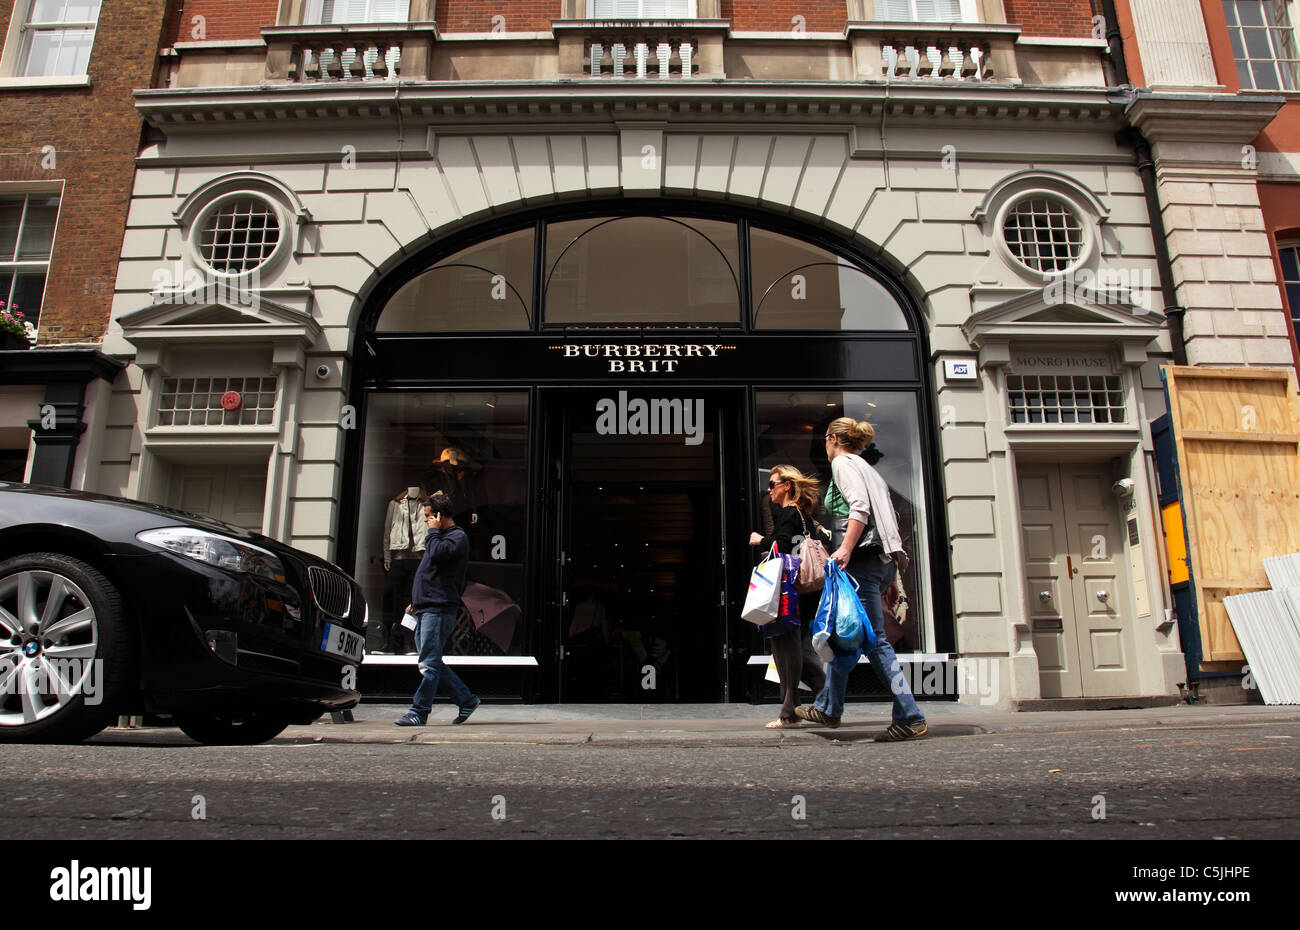 Burberry Brit store dans une nouvelle ligne, Covent Garden, London WC2,  Angleterre, Royaume-Uni Photo Stock - Alamy